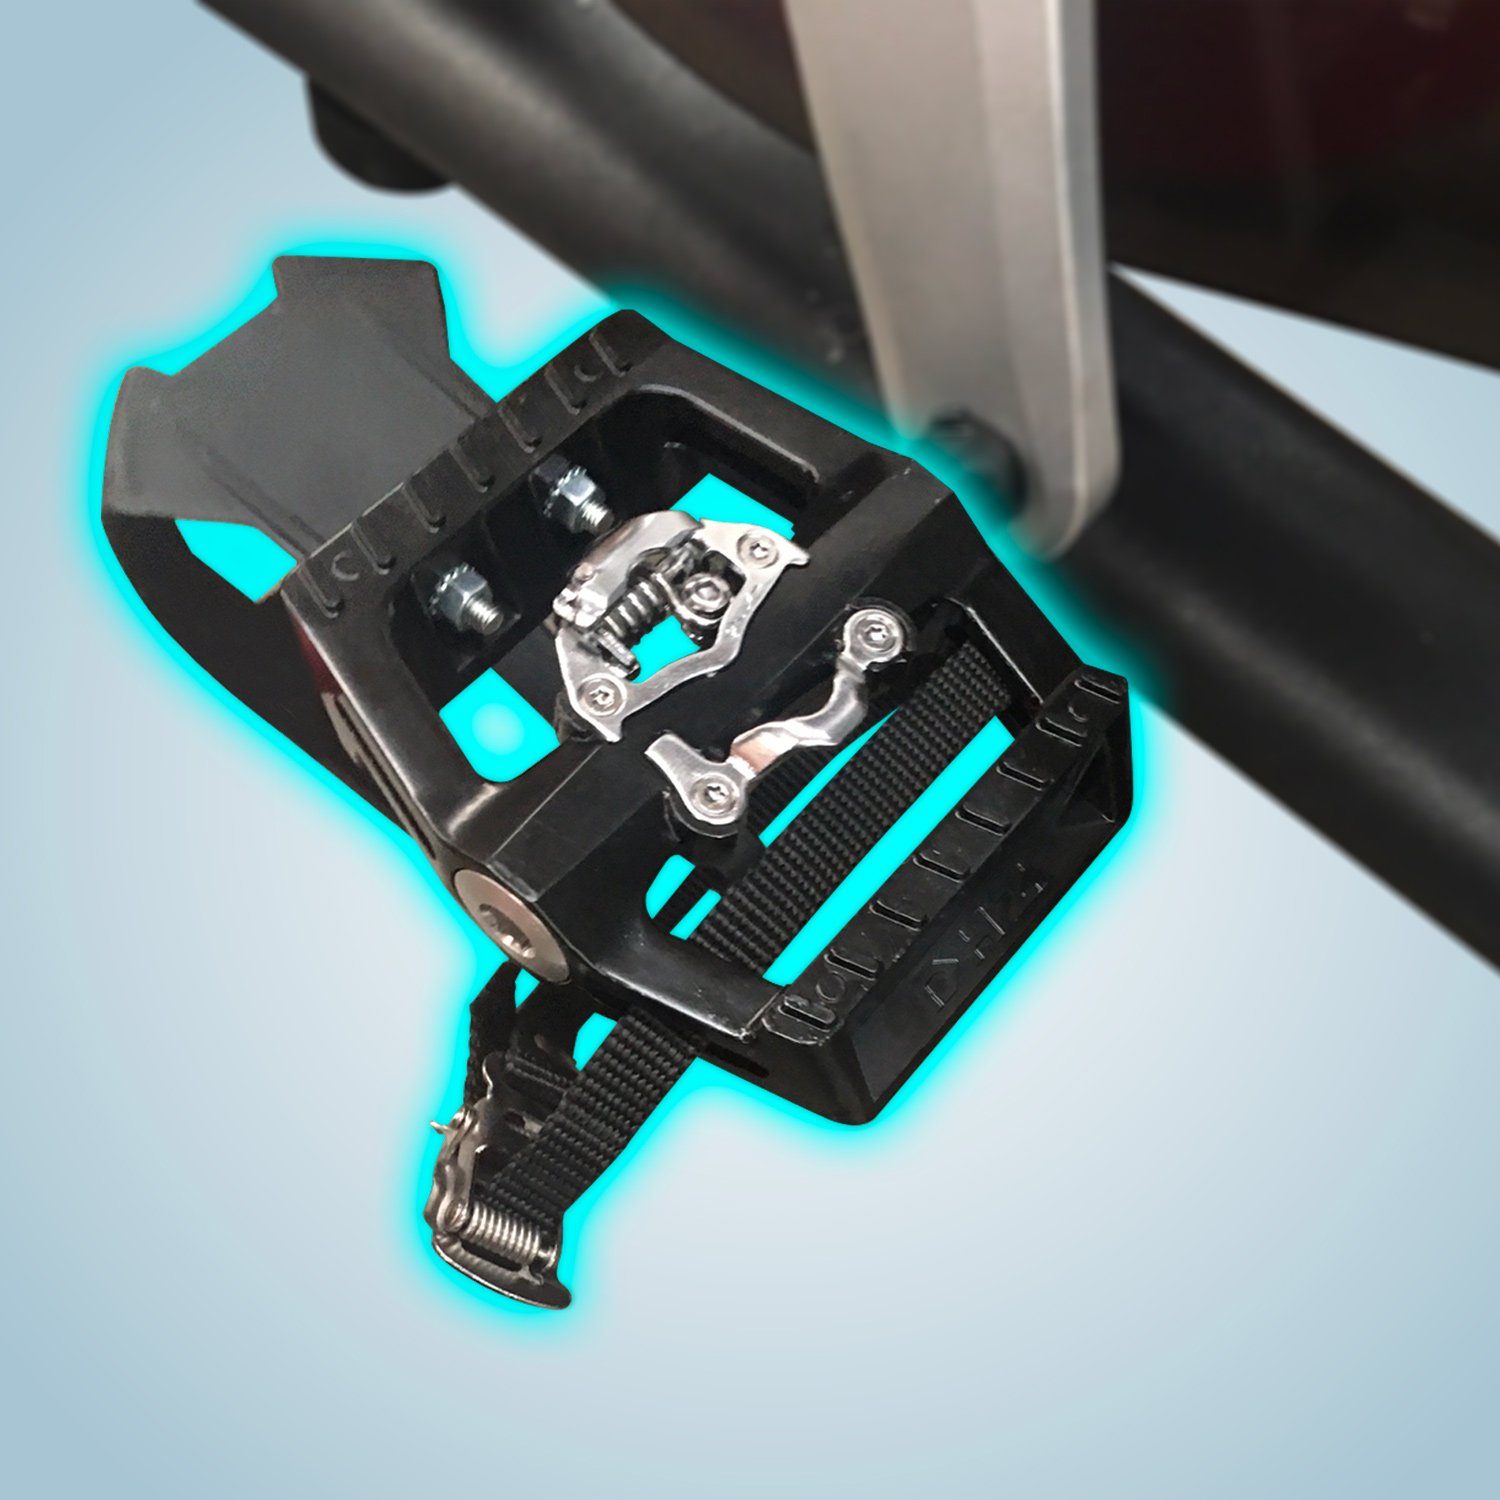 AsVIVA Fitness S15 AsVIVA SPD Shimano Speedbike Bluetooth, kompatibel Indoor kompatibel, Cycle Klickpedale App